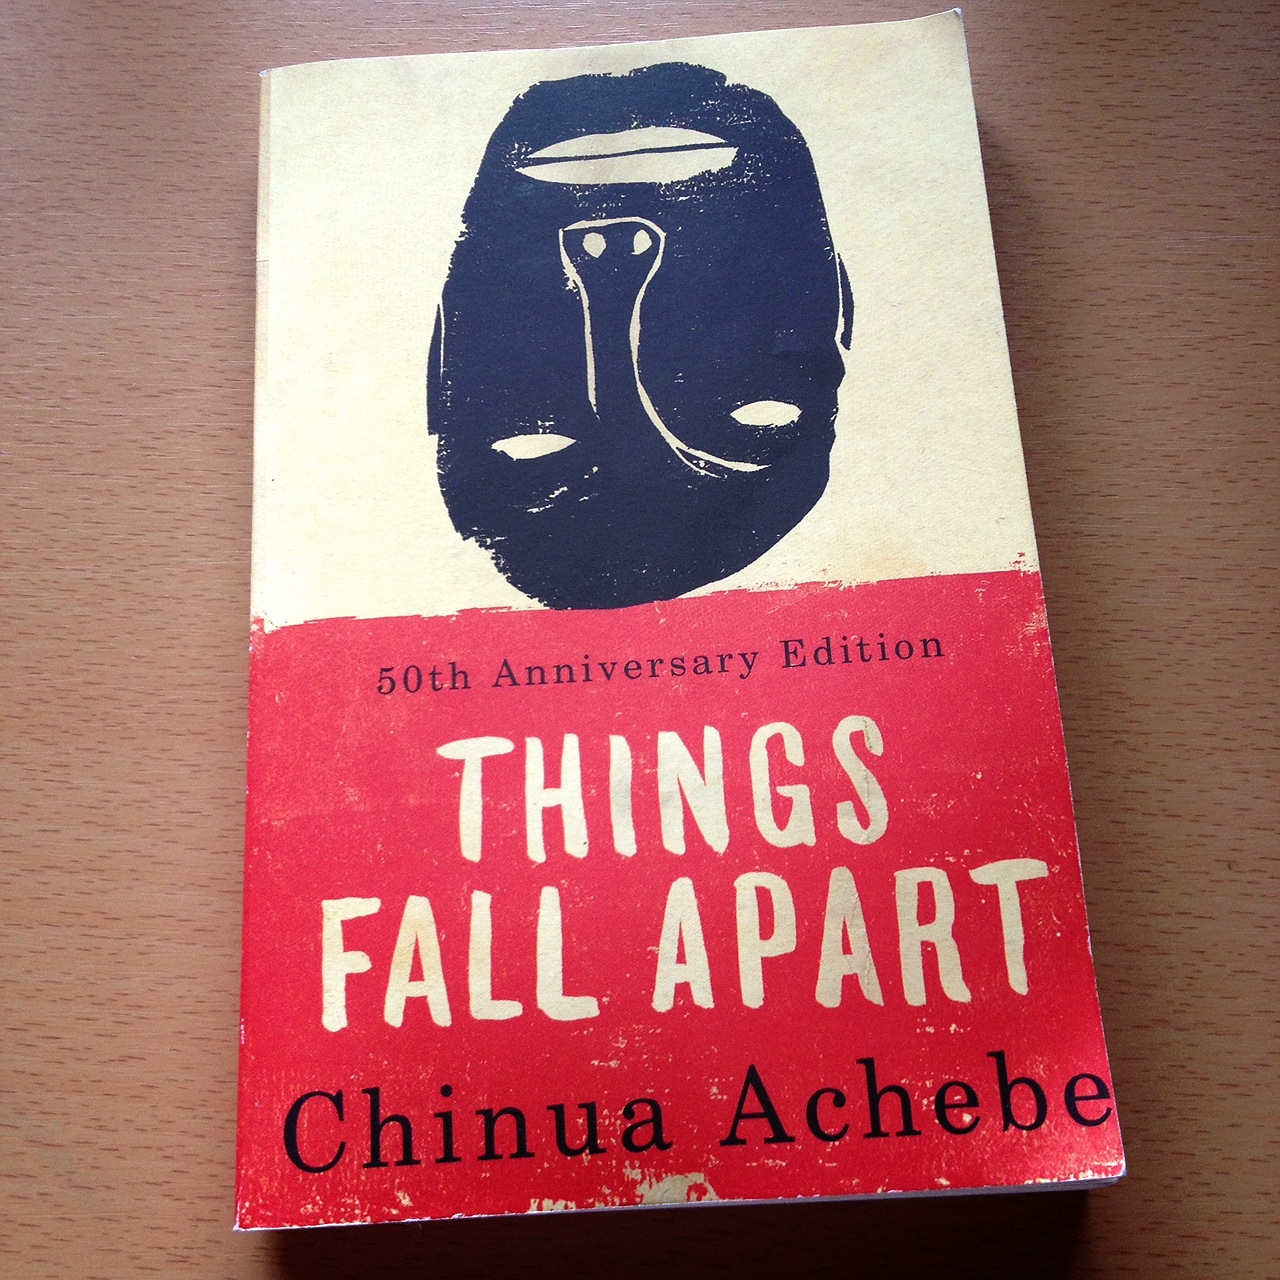 Things Fall Apart, Chinua Achebe - Essay